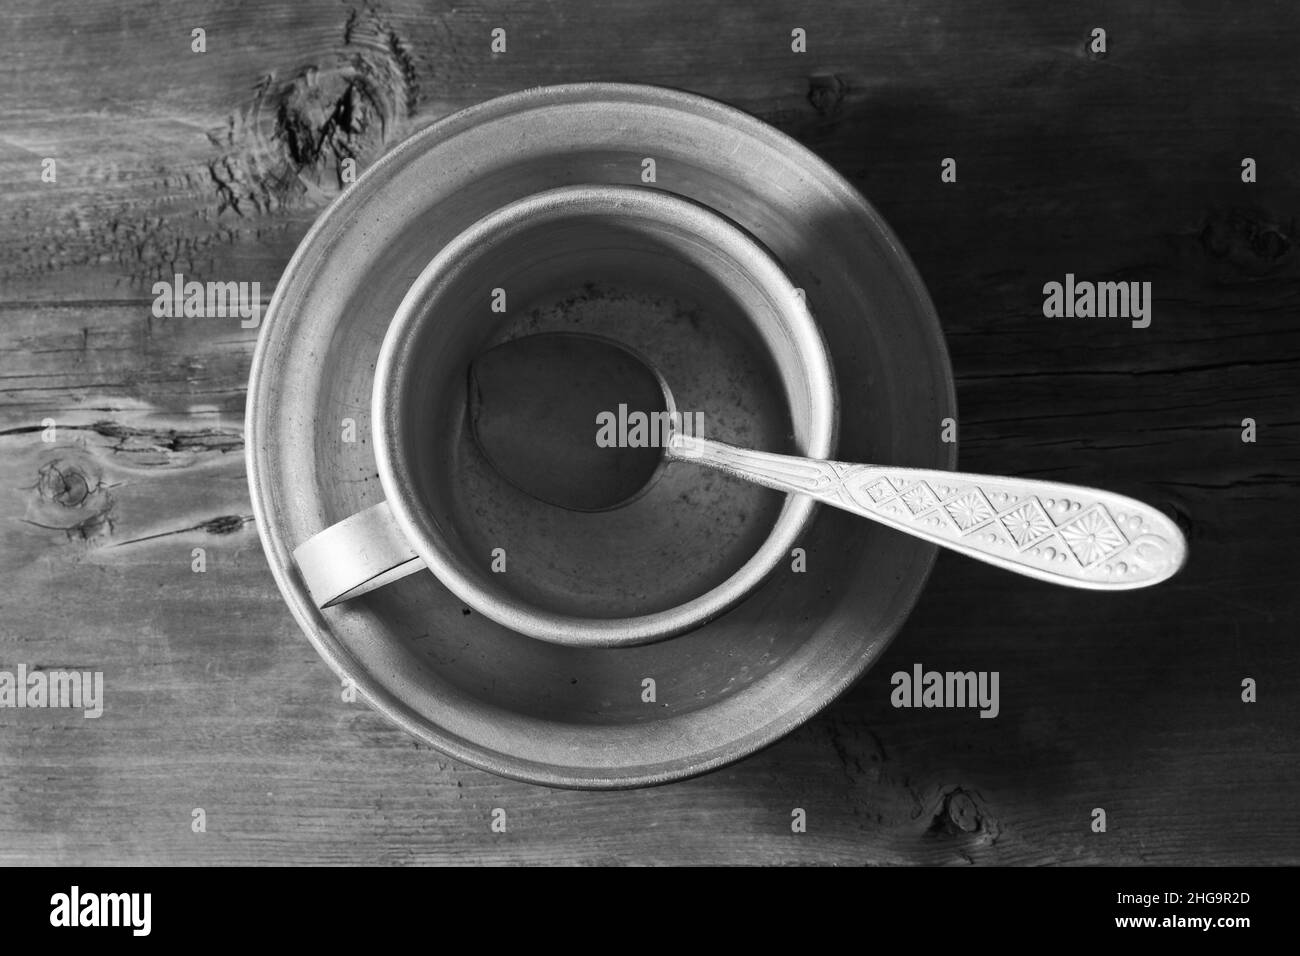 Vider le plat en aluminium, la cuillère et le mug sur l'ancienne table en bois, noir et blanc Banque D'Images